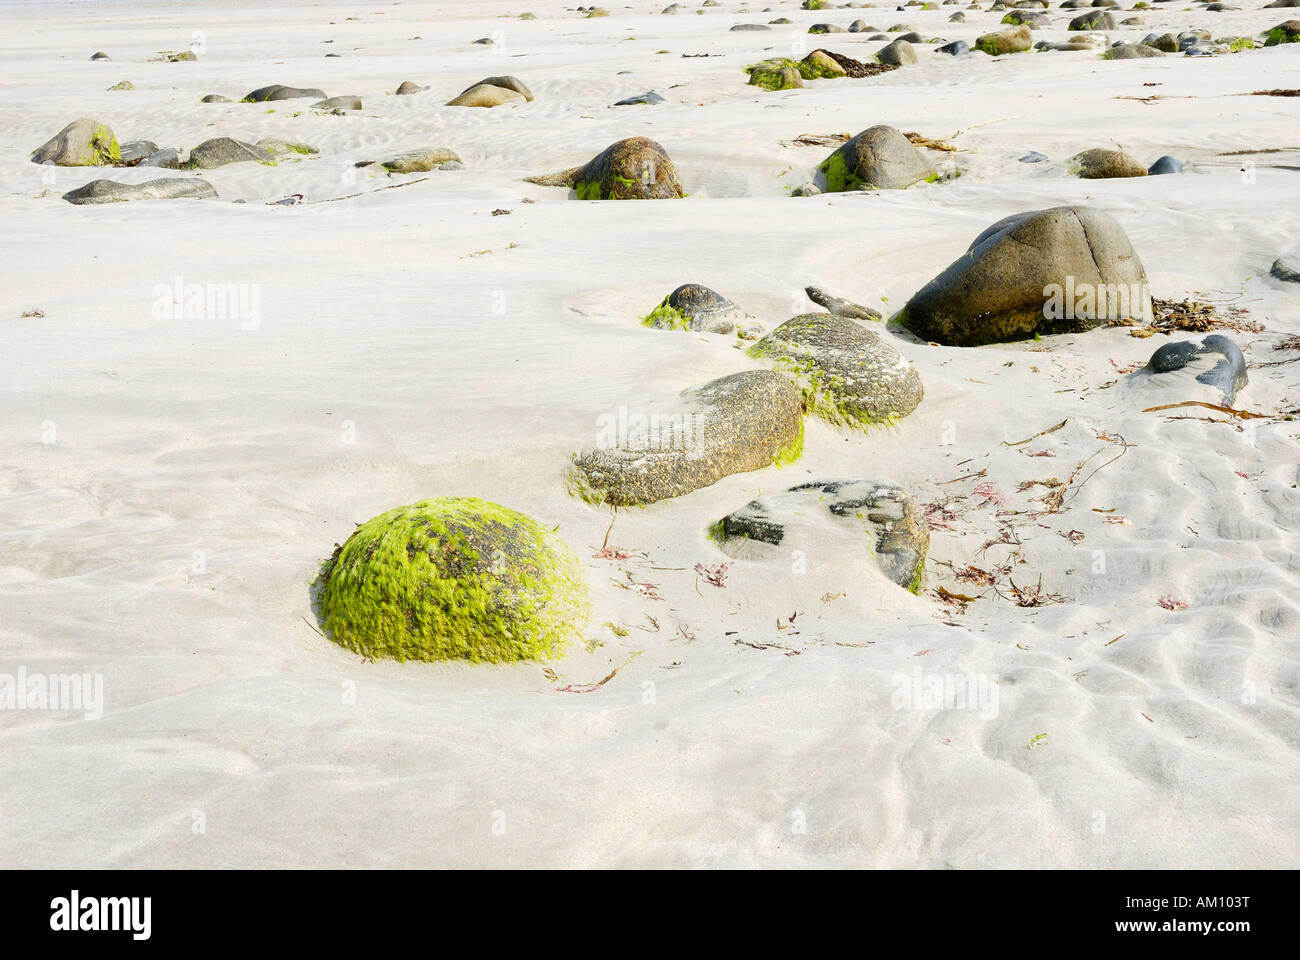 Fondali marini a bassa marea rivelando bolders ricoperti di alghe verdi e strutturate forme in sabbia Foto Stock